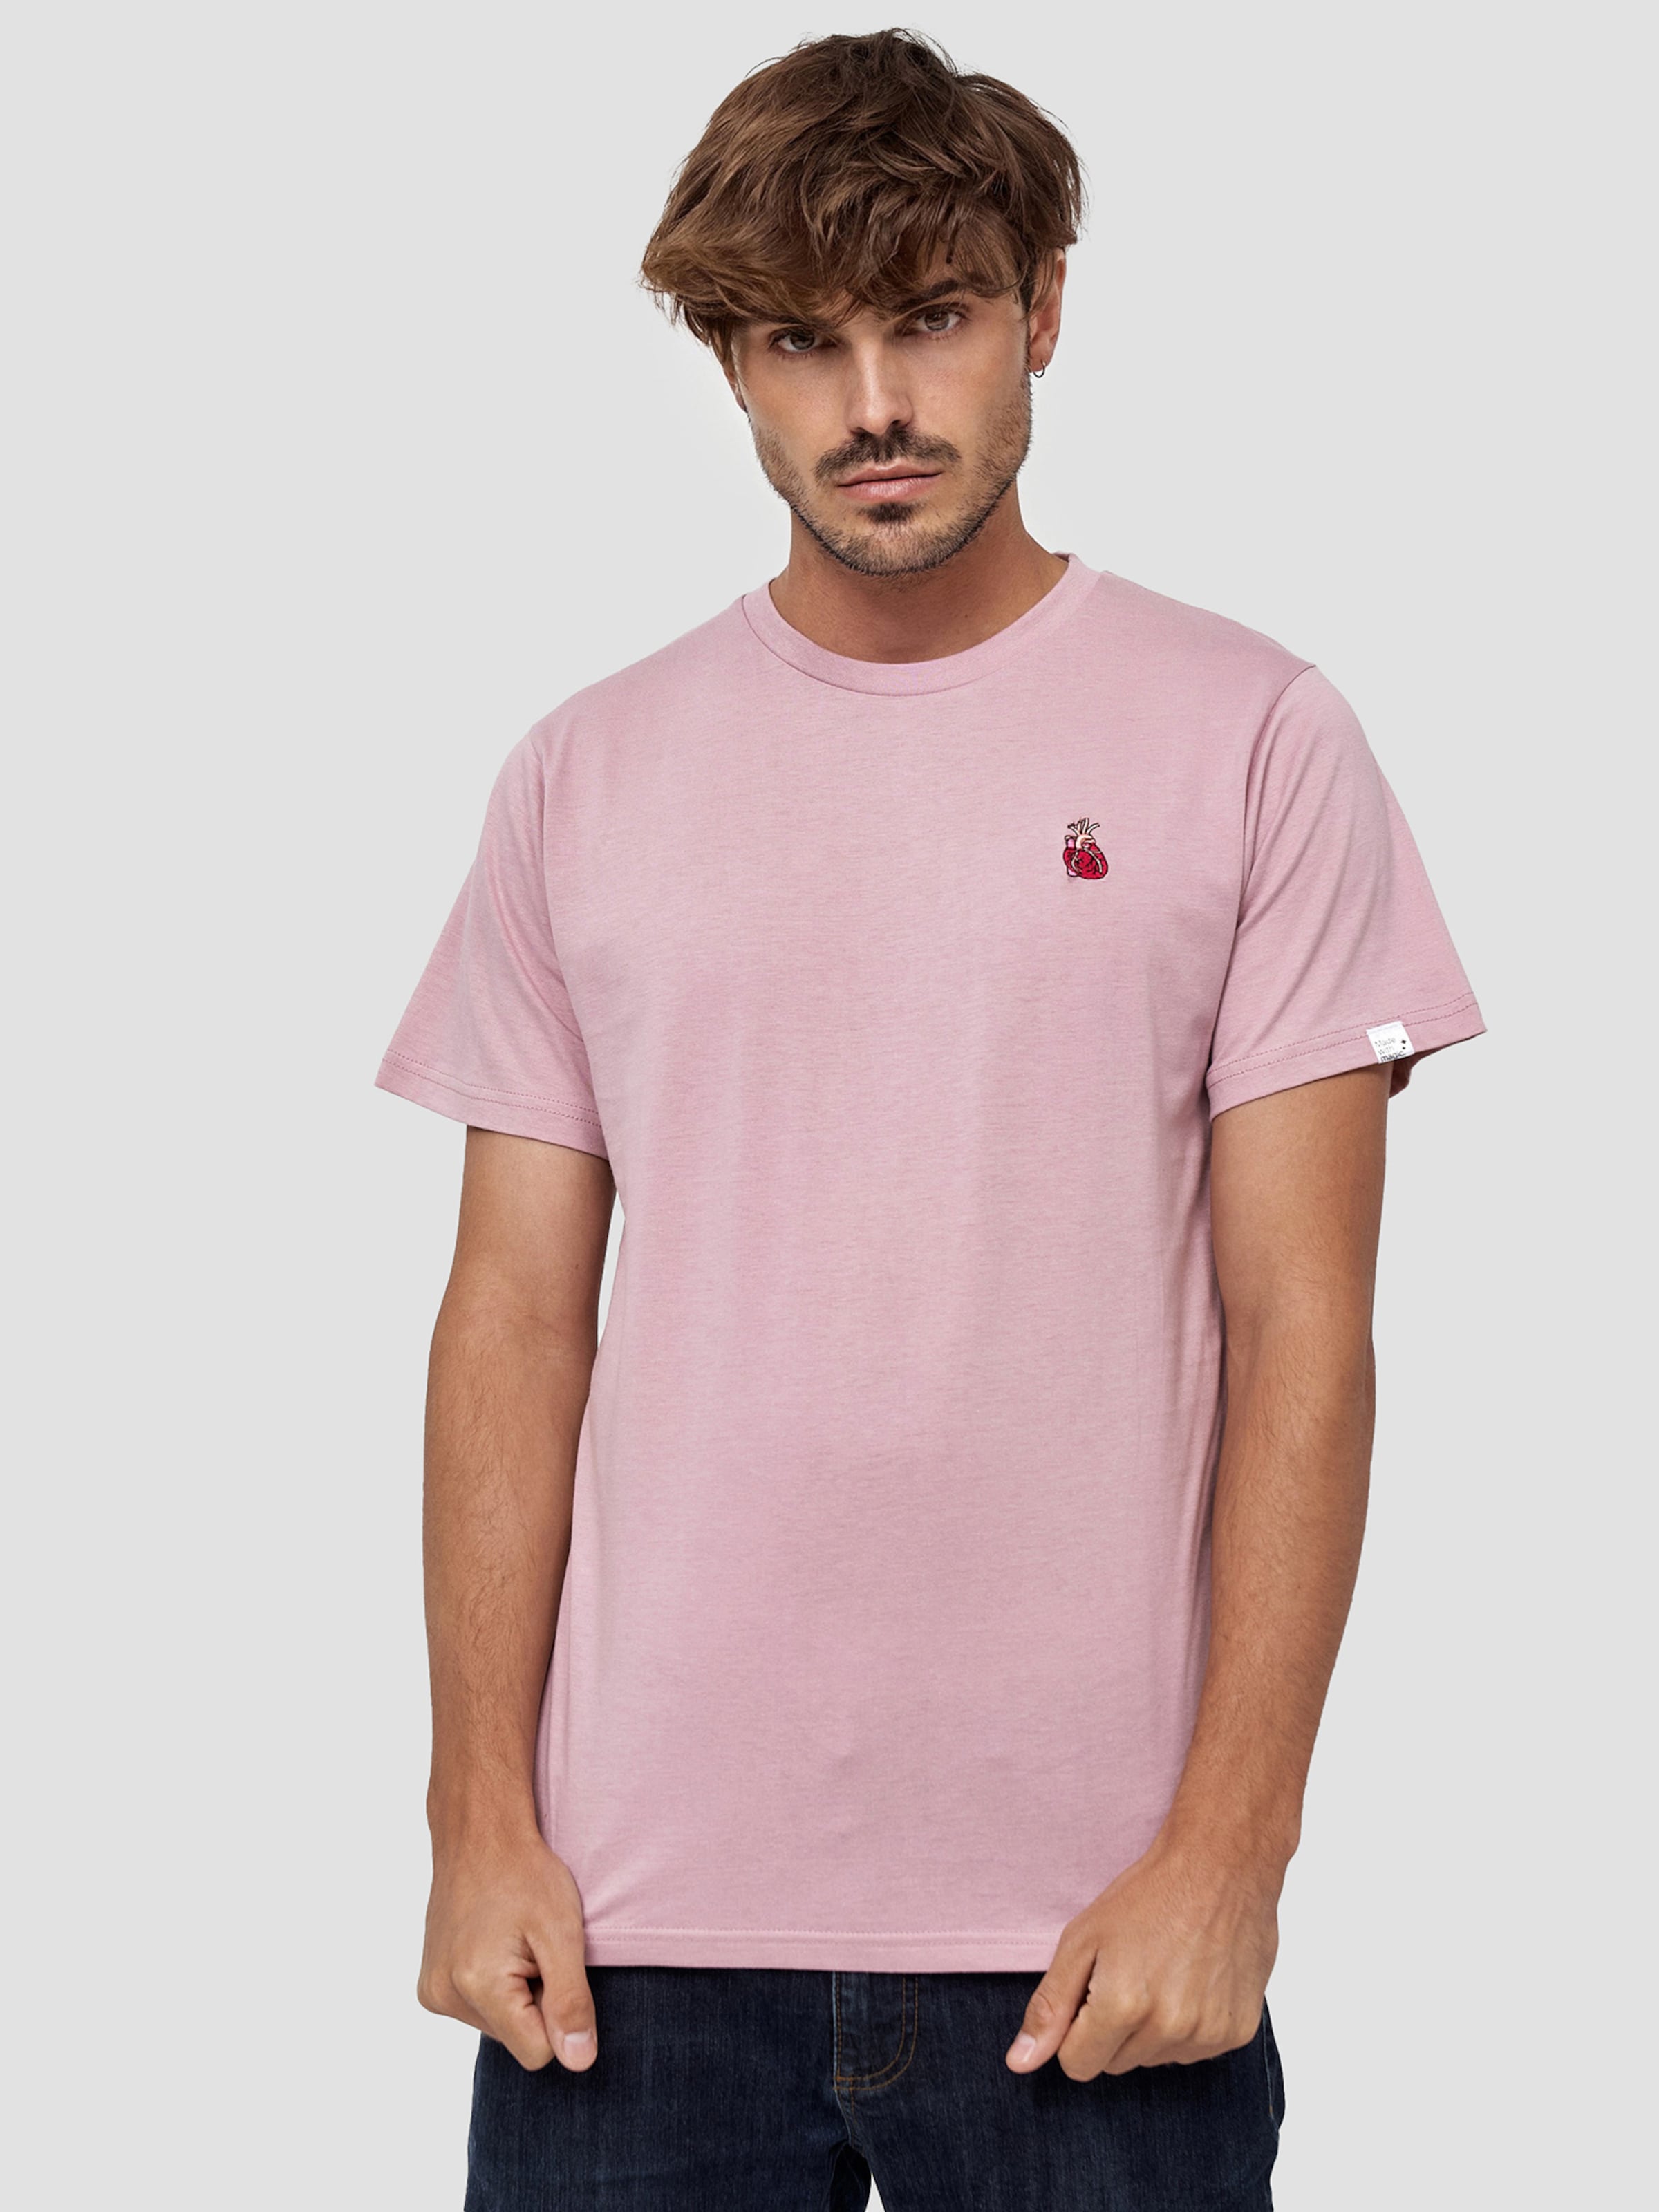 Männer Shirts Mikon T-Shirt 'Herz' in Pink - WX19700